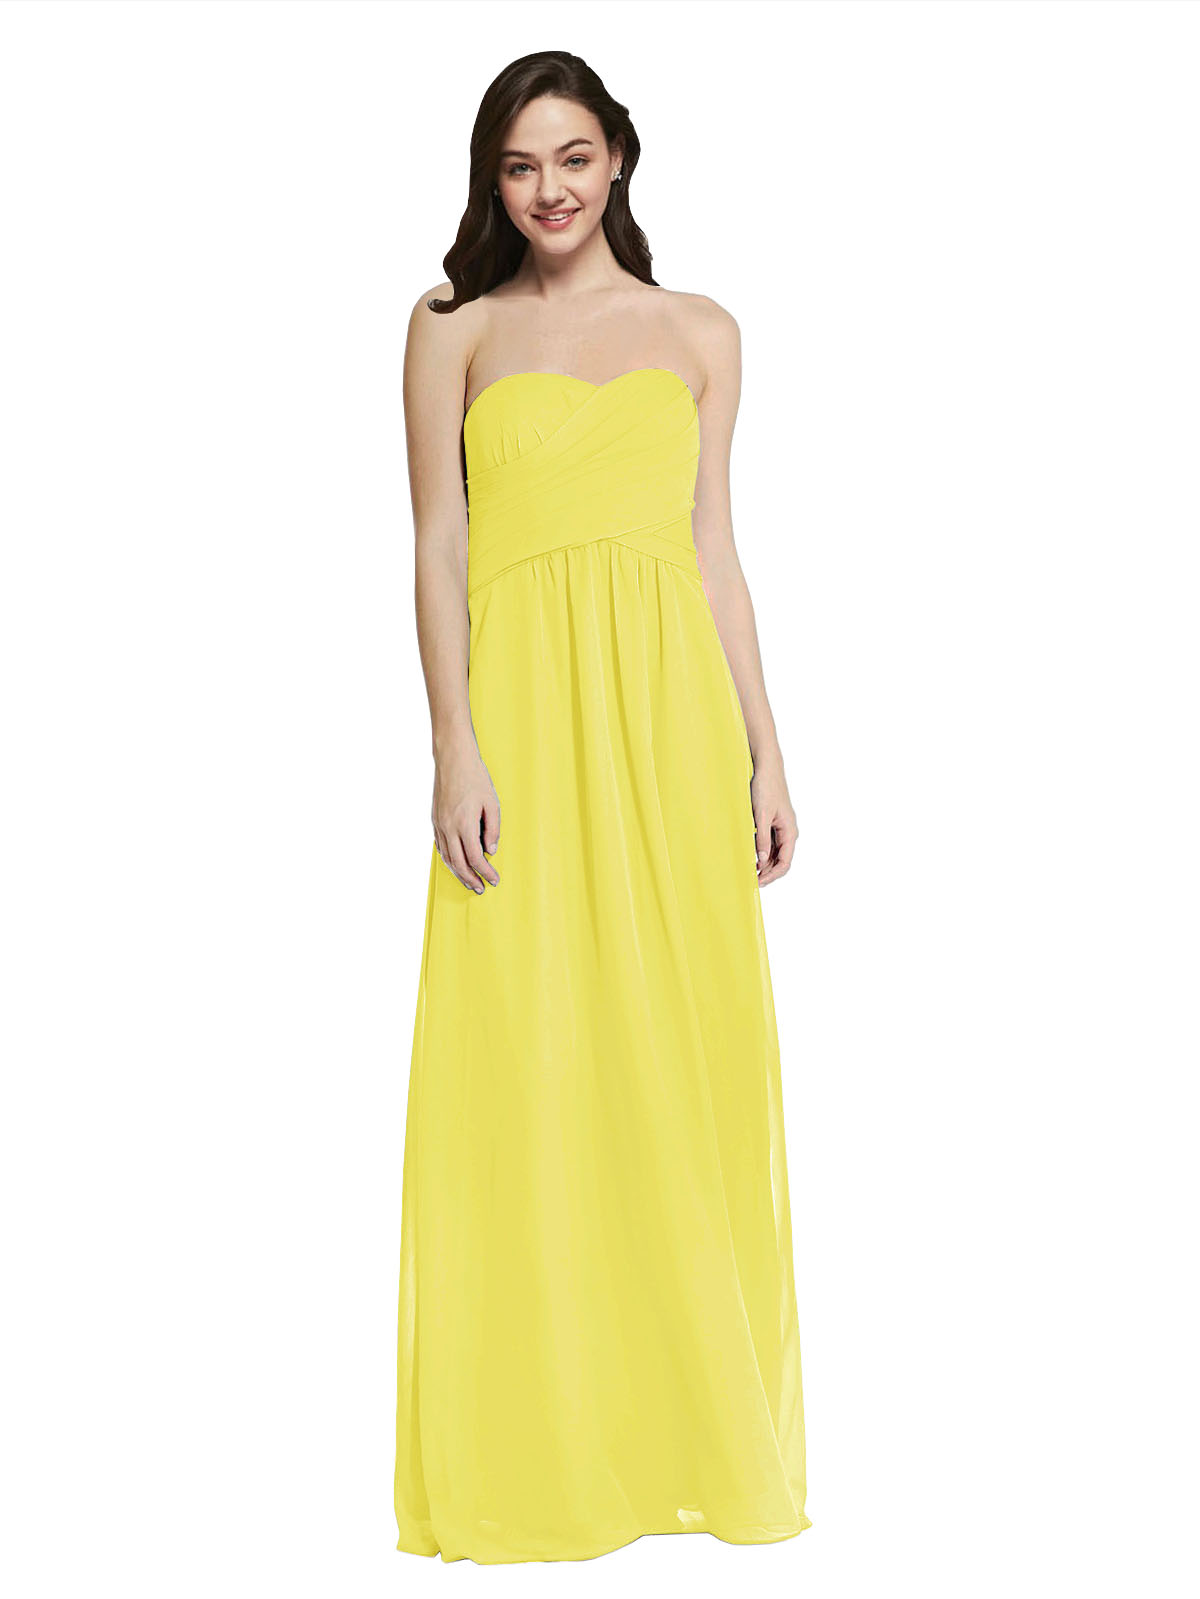 Long A-Line Strapless Sweetheart Sleeveless Yellow Chiffon Bridesmaid Dress Jenner